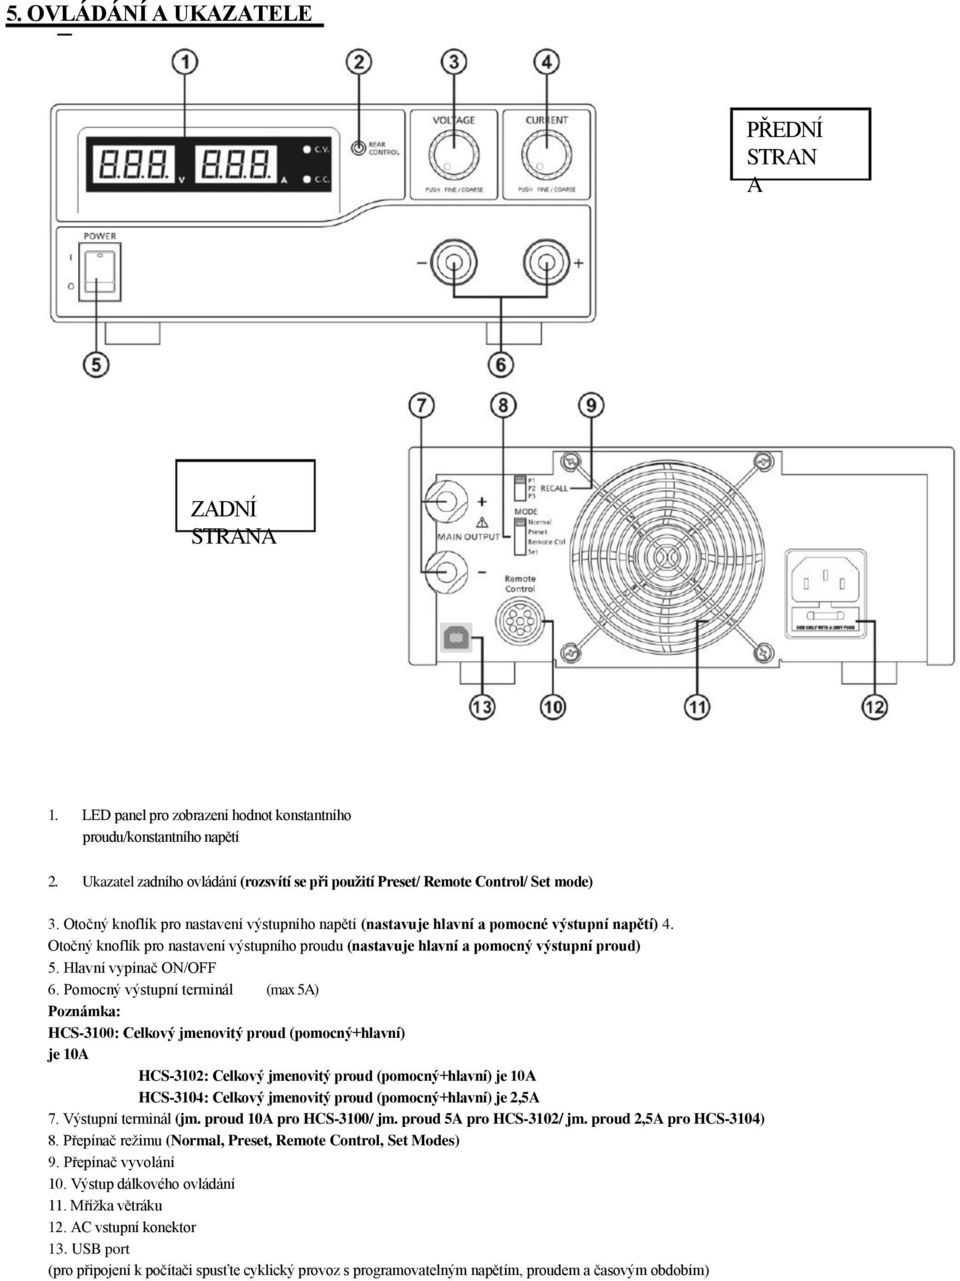 Otočný knoflík pro nastavení výstupního proudu (nastavuje hlavní a pomocný výstupní proud) 5. Hlavní vypínač ON/OFF 6.